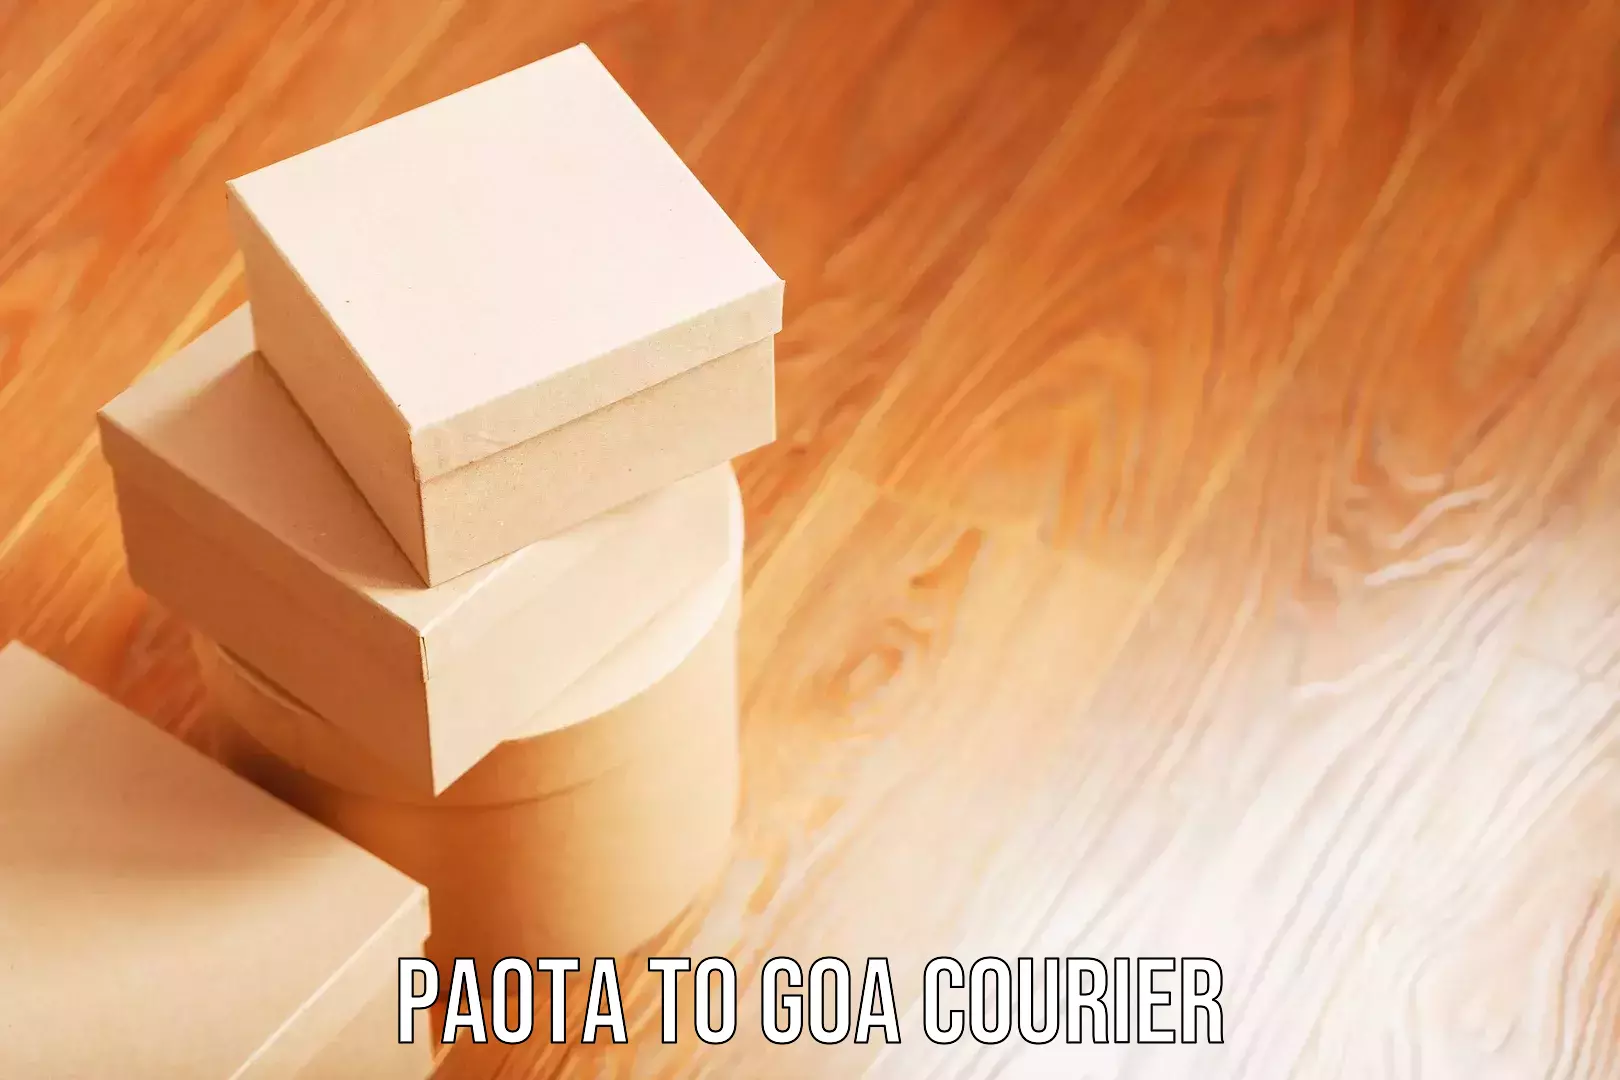 Luggage delivery estimate Paota to Goa